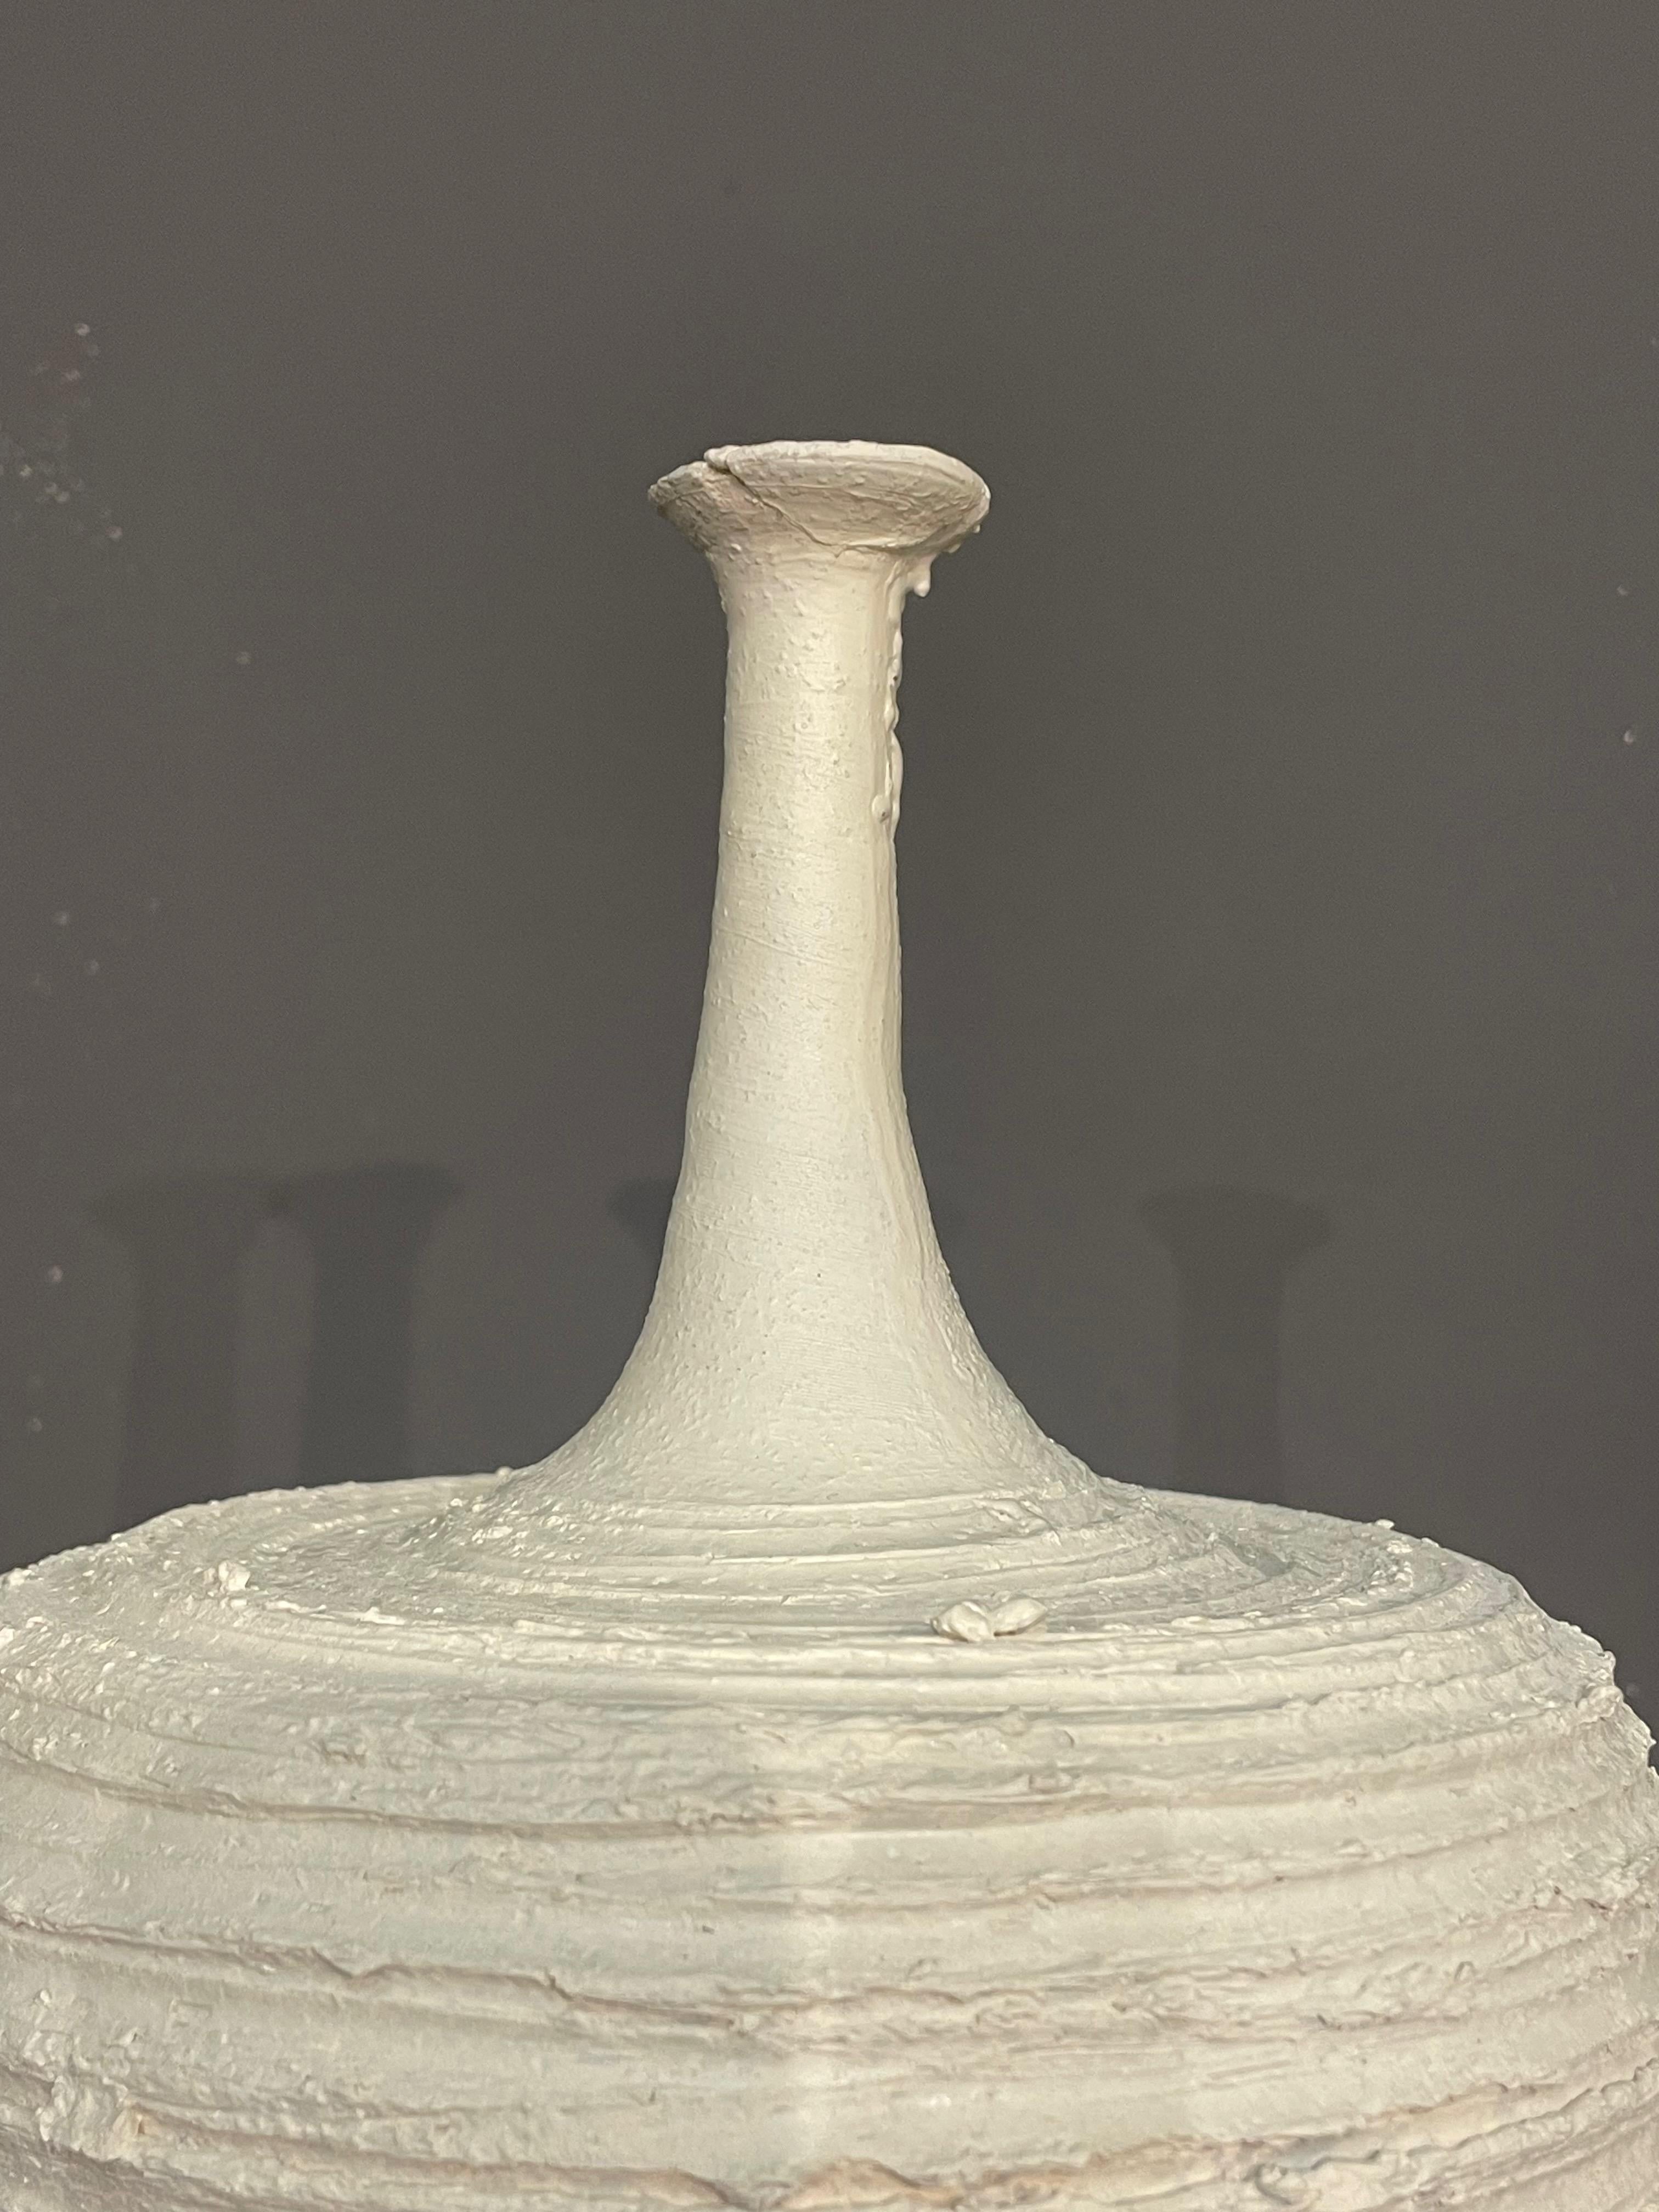 Zeitgenössische, handgefertigte italienische Vase mit brutalistischem Design.
Glatter Hals mit strukturiertem, horizontal geriffeltem Boden.
Teil einer Sammlung von drei Stücken.
